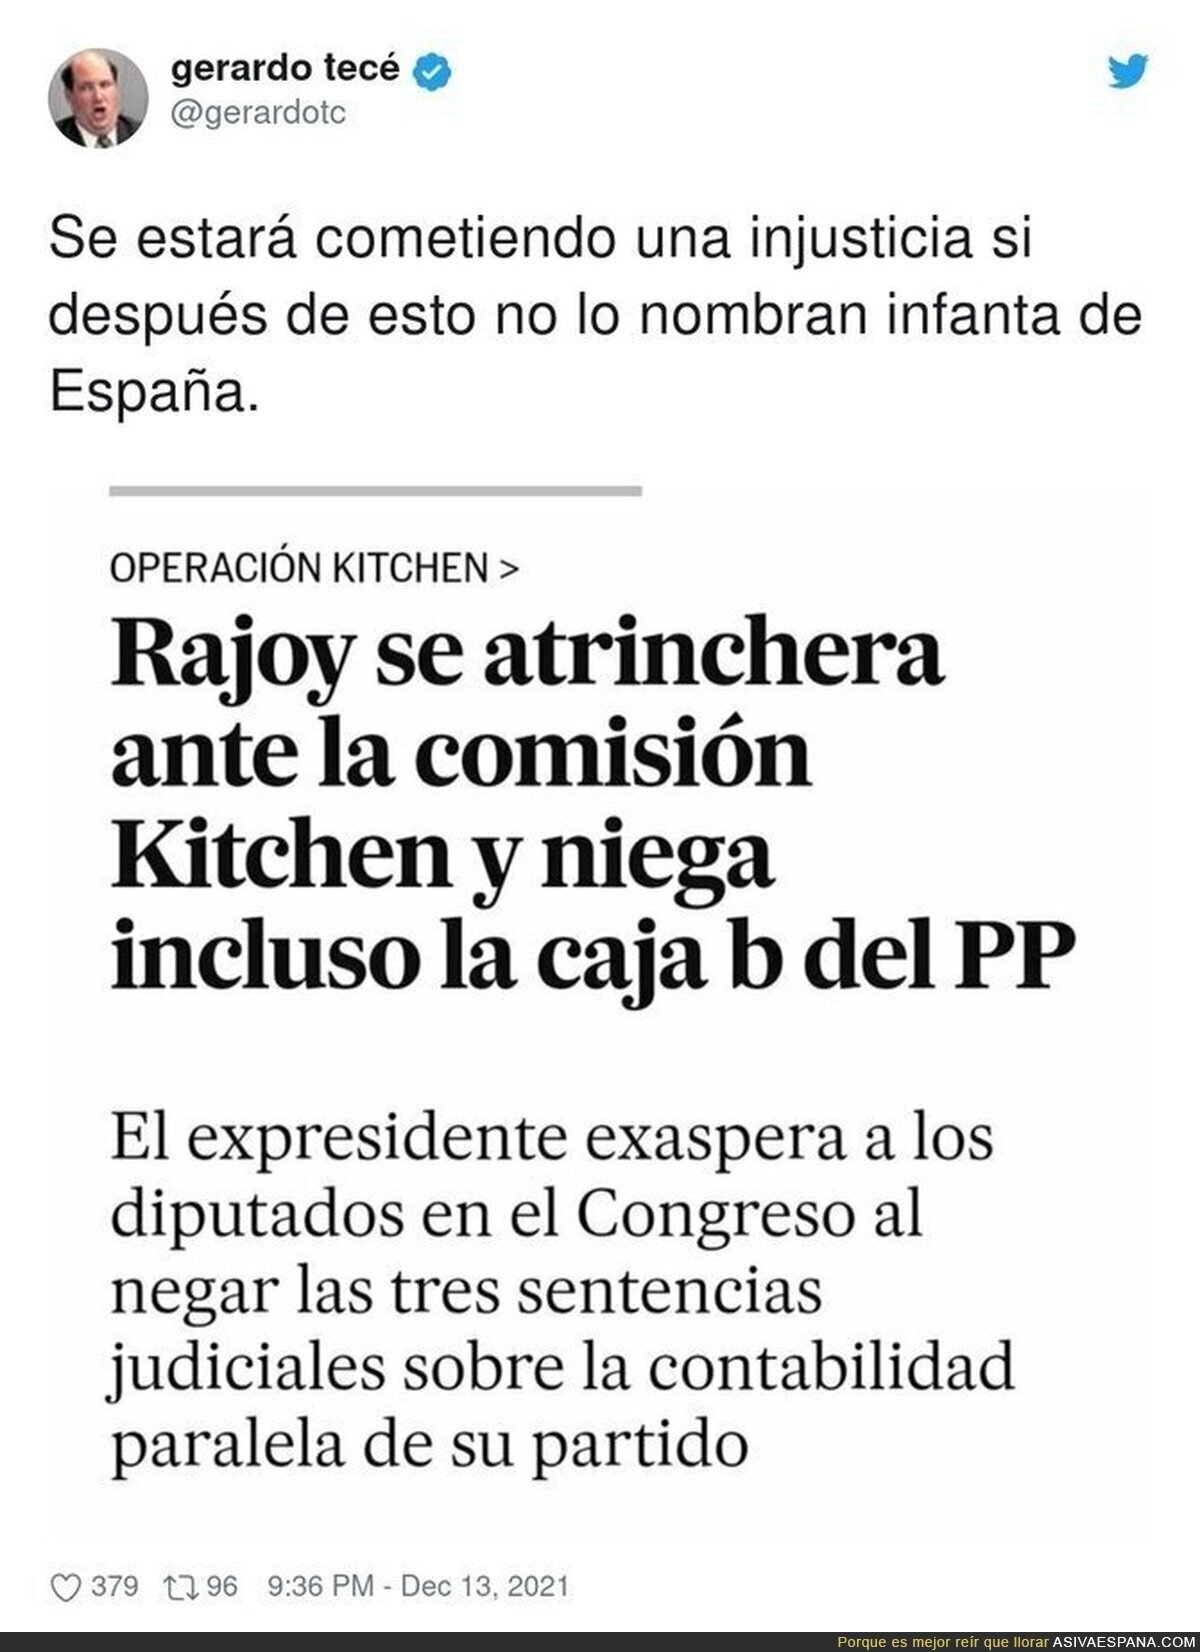 Rajoy niega todo hasta lo que está probado